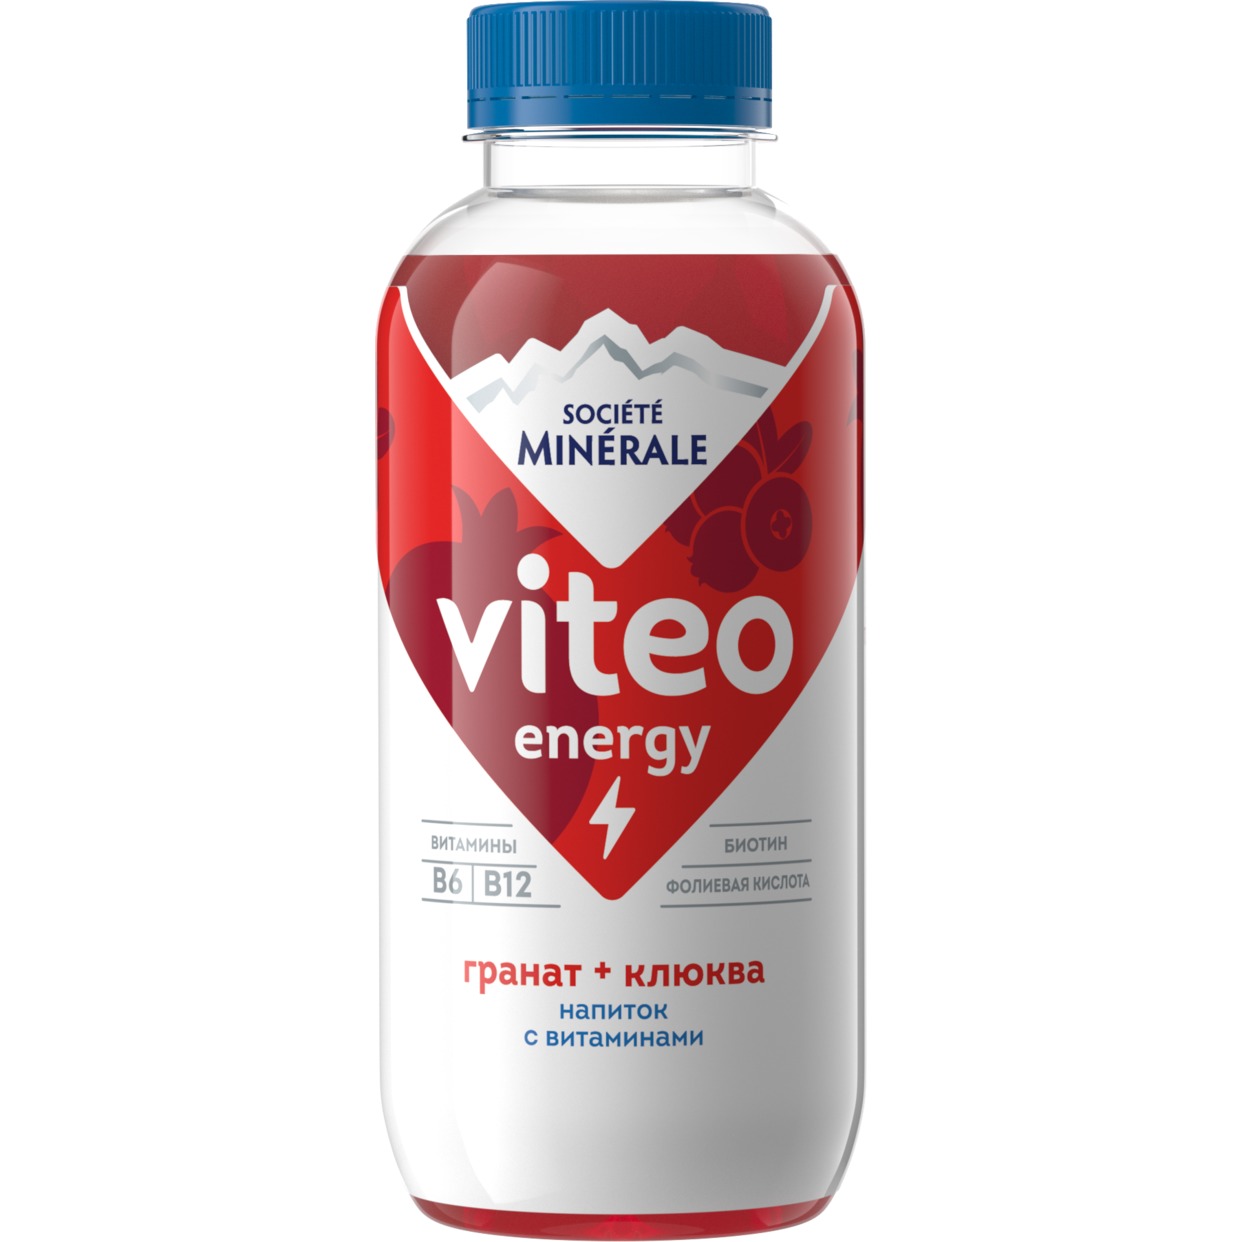 Напиток безалкогольный негазированный торговой марки «Societe Minerale Viteo» с витаминами вкус гранат - клюква 0,4